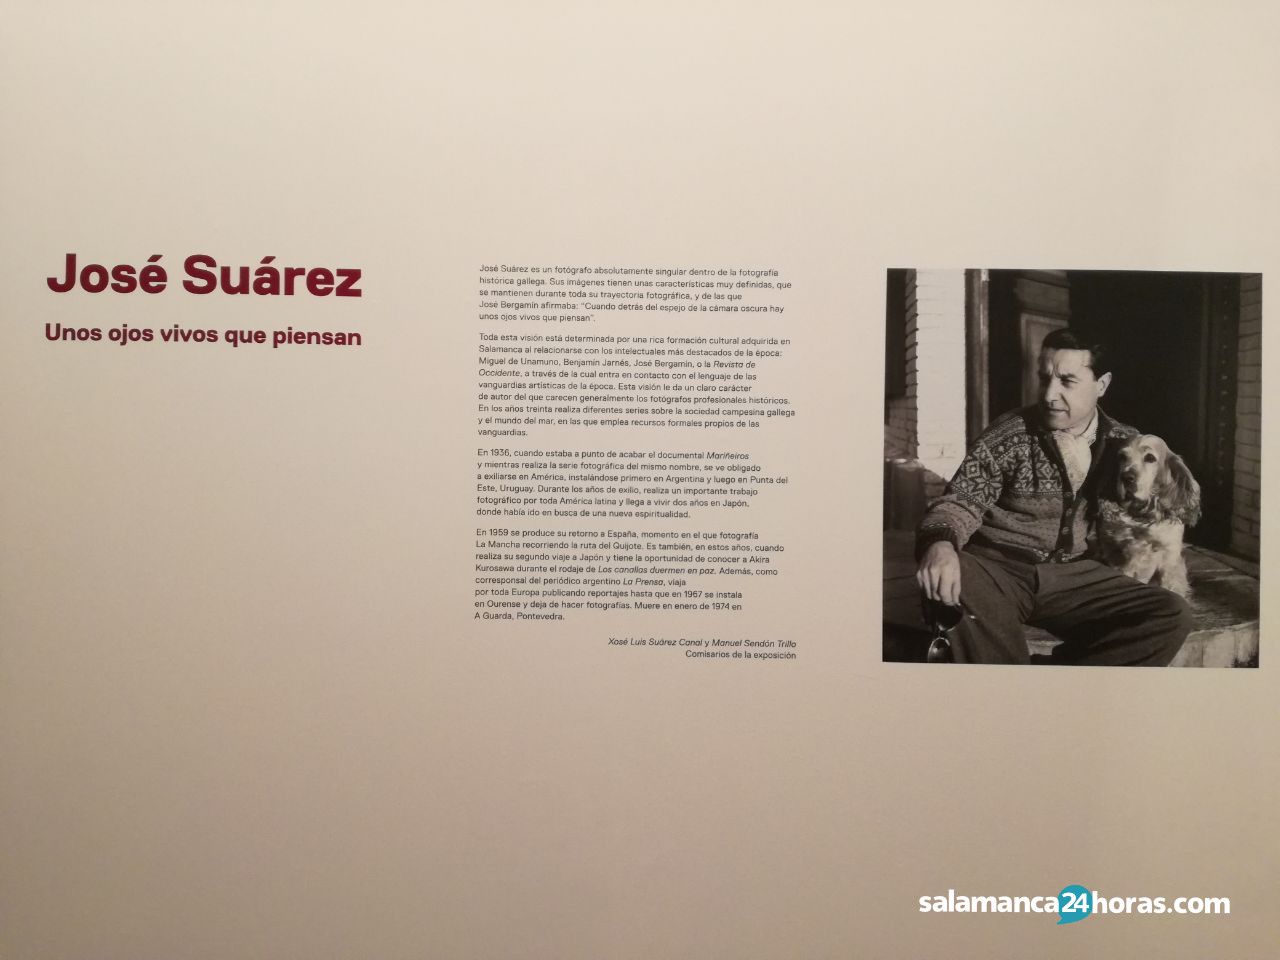  Exposición josé Suárez (19) 